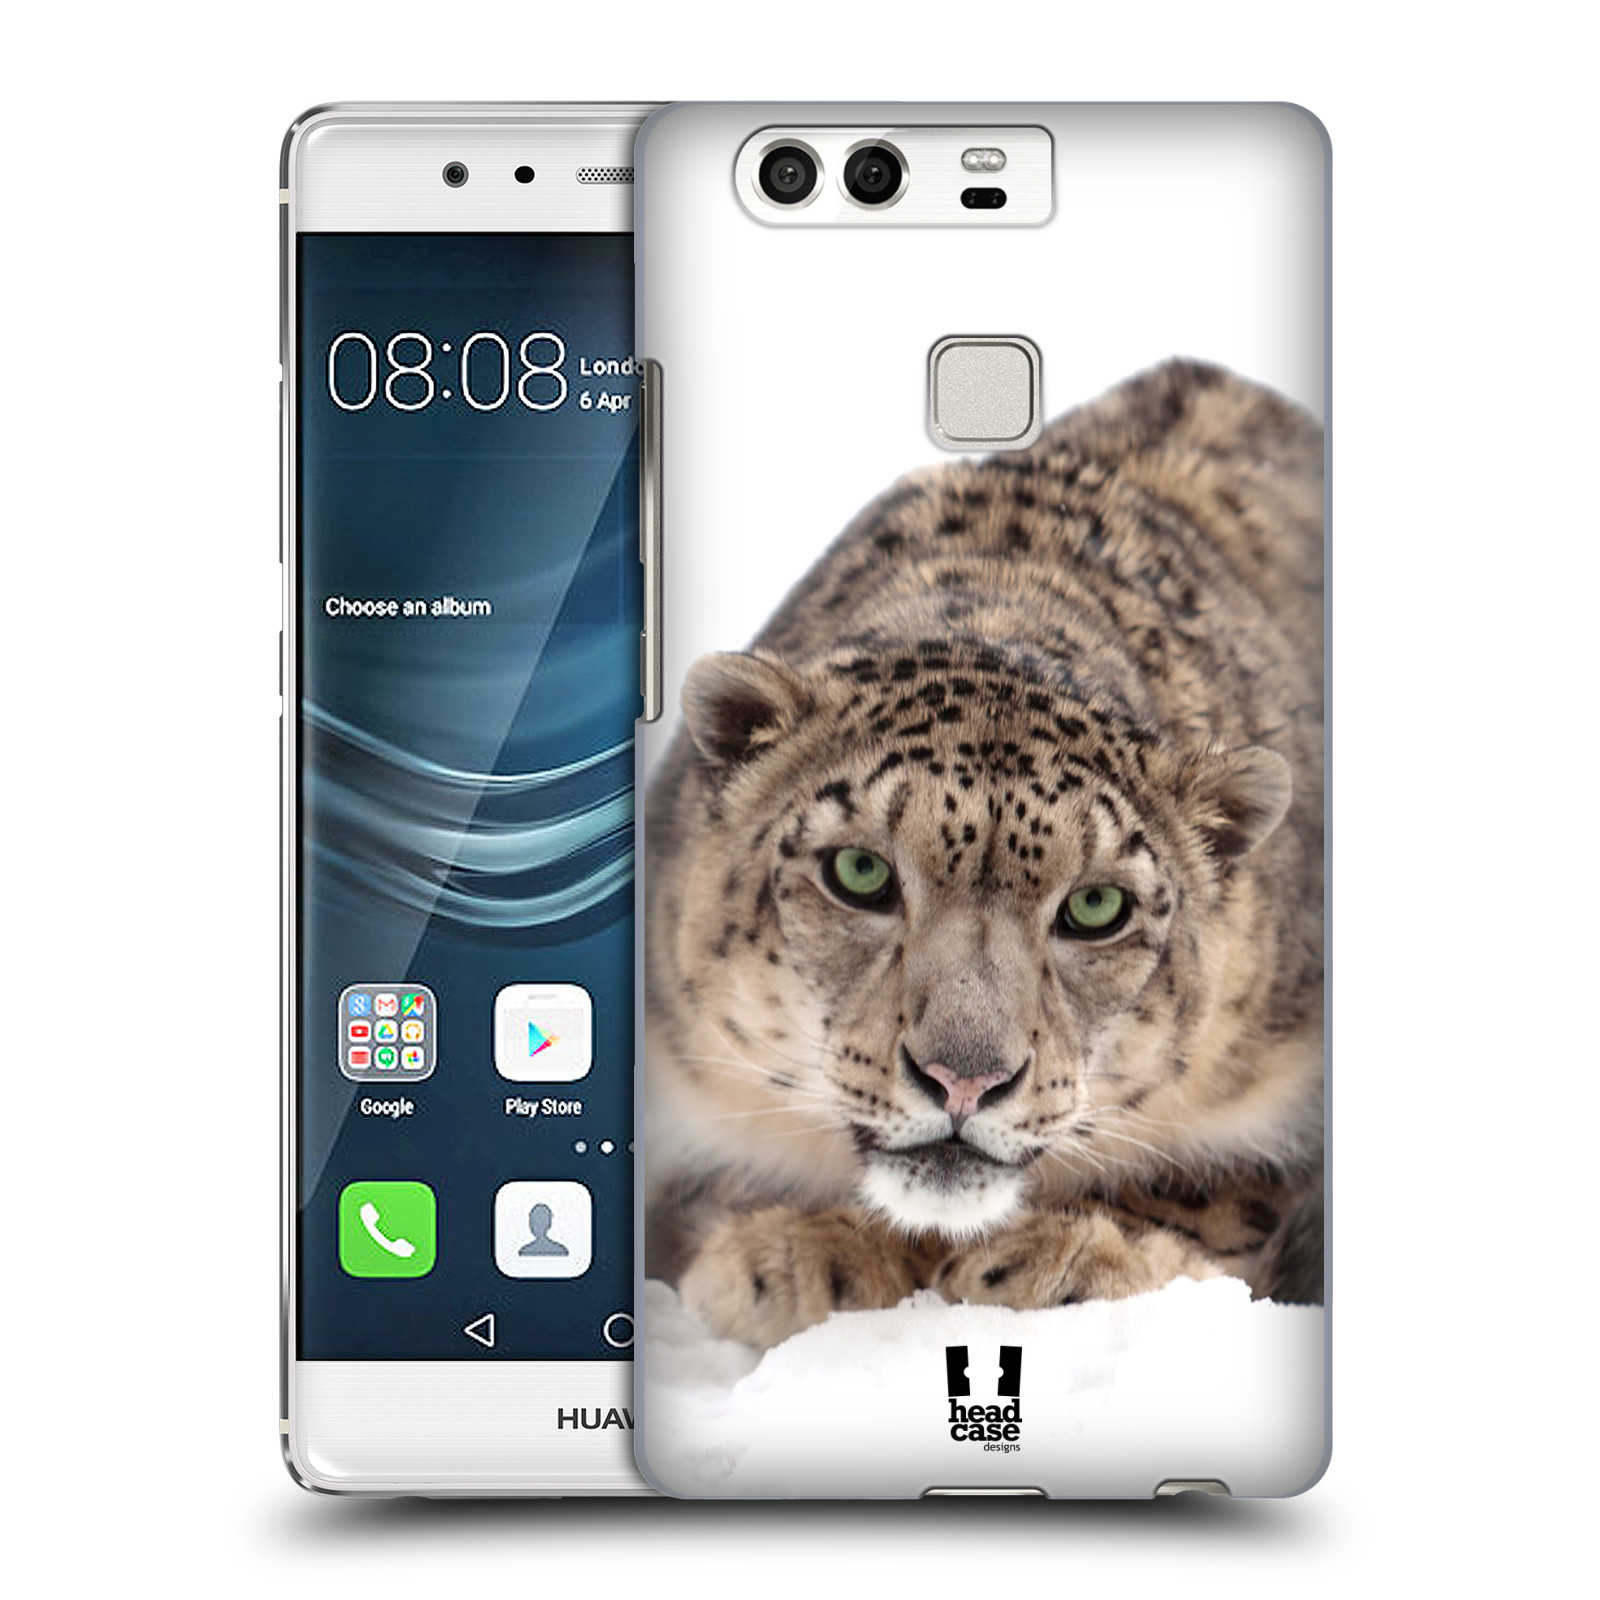 HEAD CASE plastový obal na mobil Huawei P9 / P9 DUAL SIM vzor Divočina, Divoký život a zvířata foto SNĚŽNÝ LEOPARD